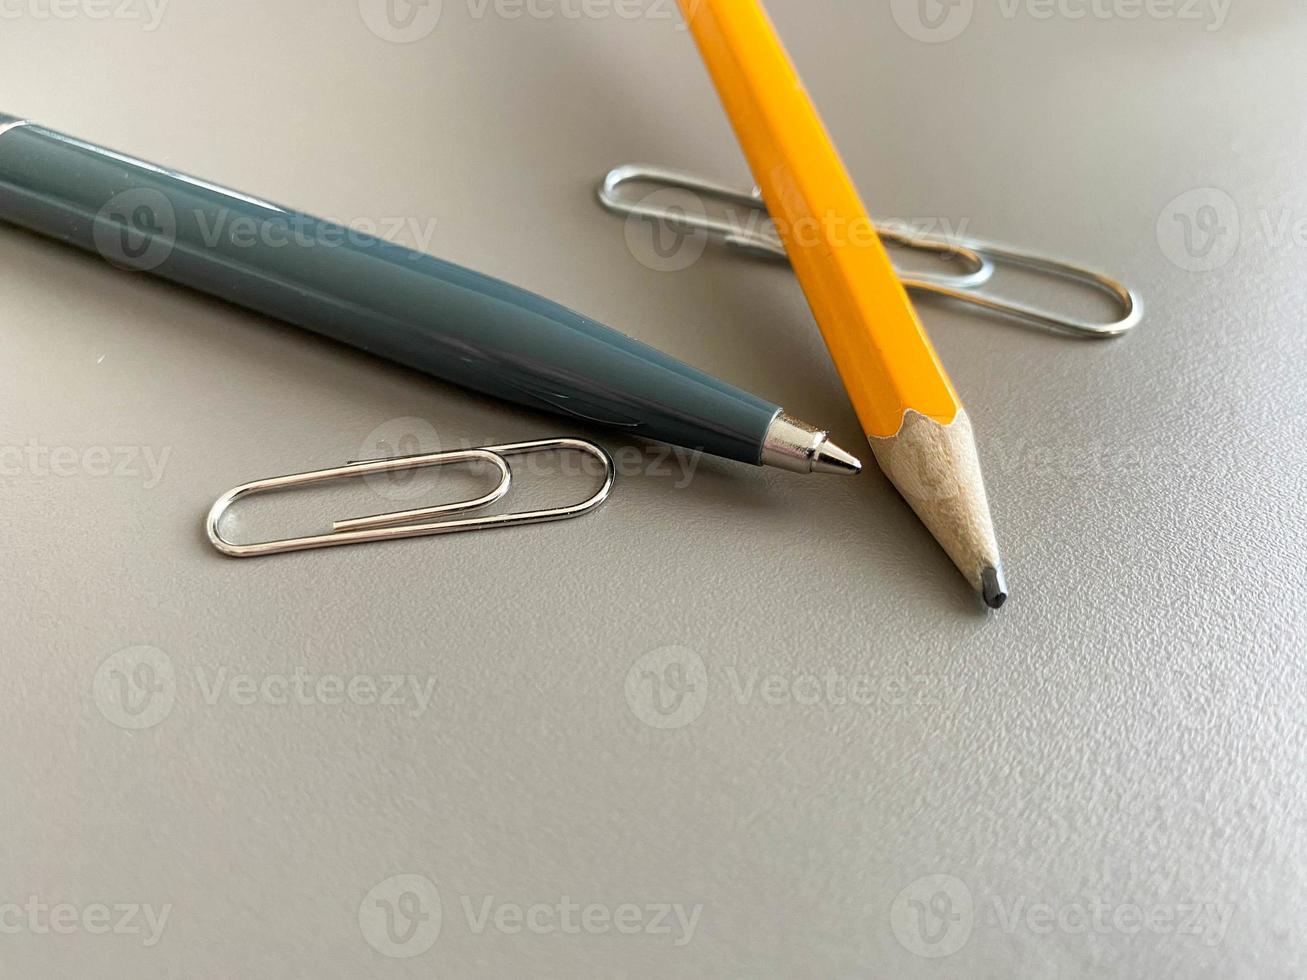 stylo à bille vert automatique et crayon avec trombones pour écrire sur votre bureau de bureau. travail d'entreprise photo